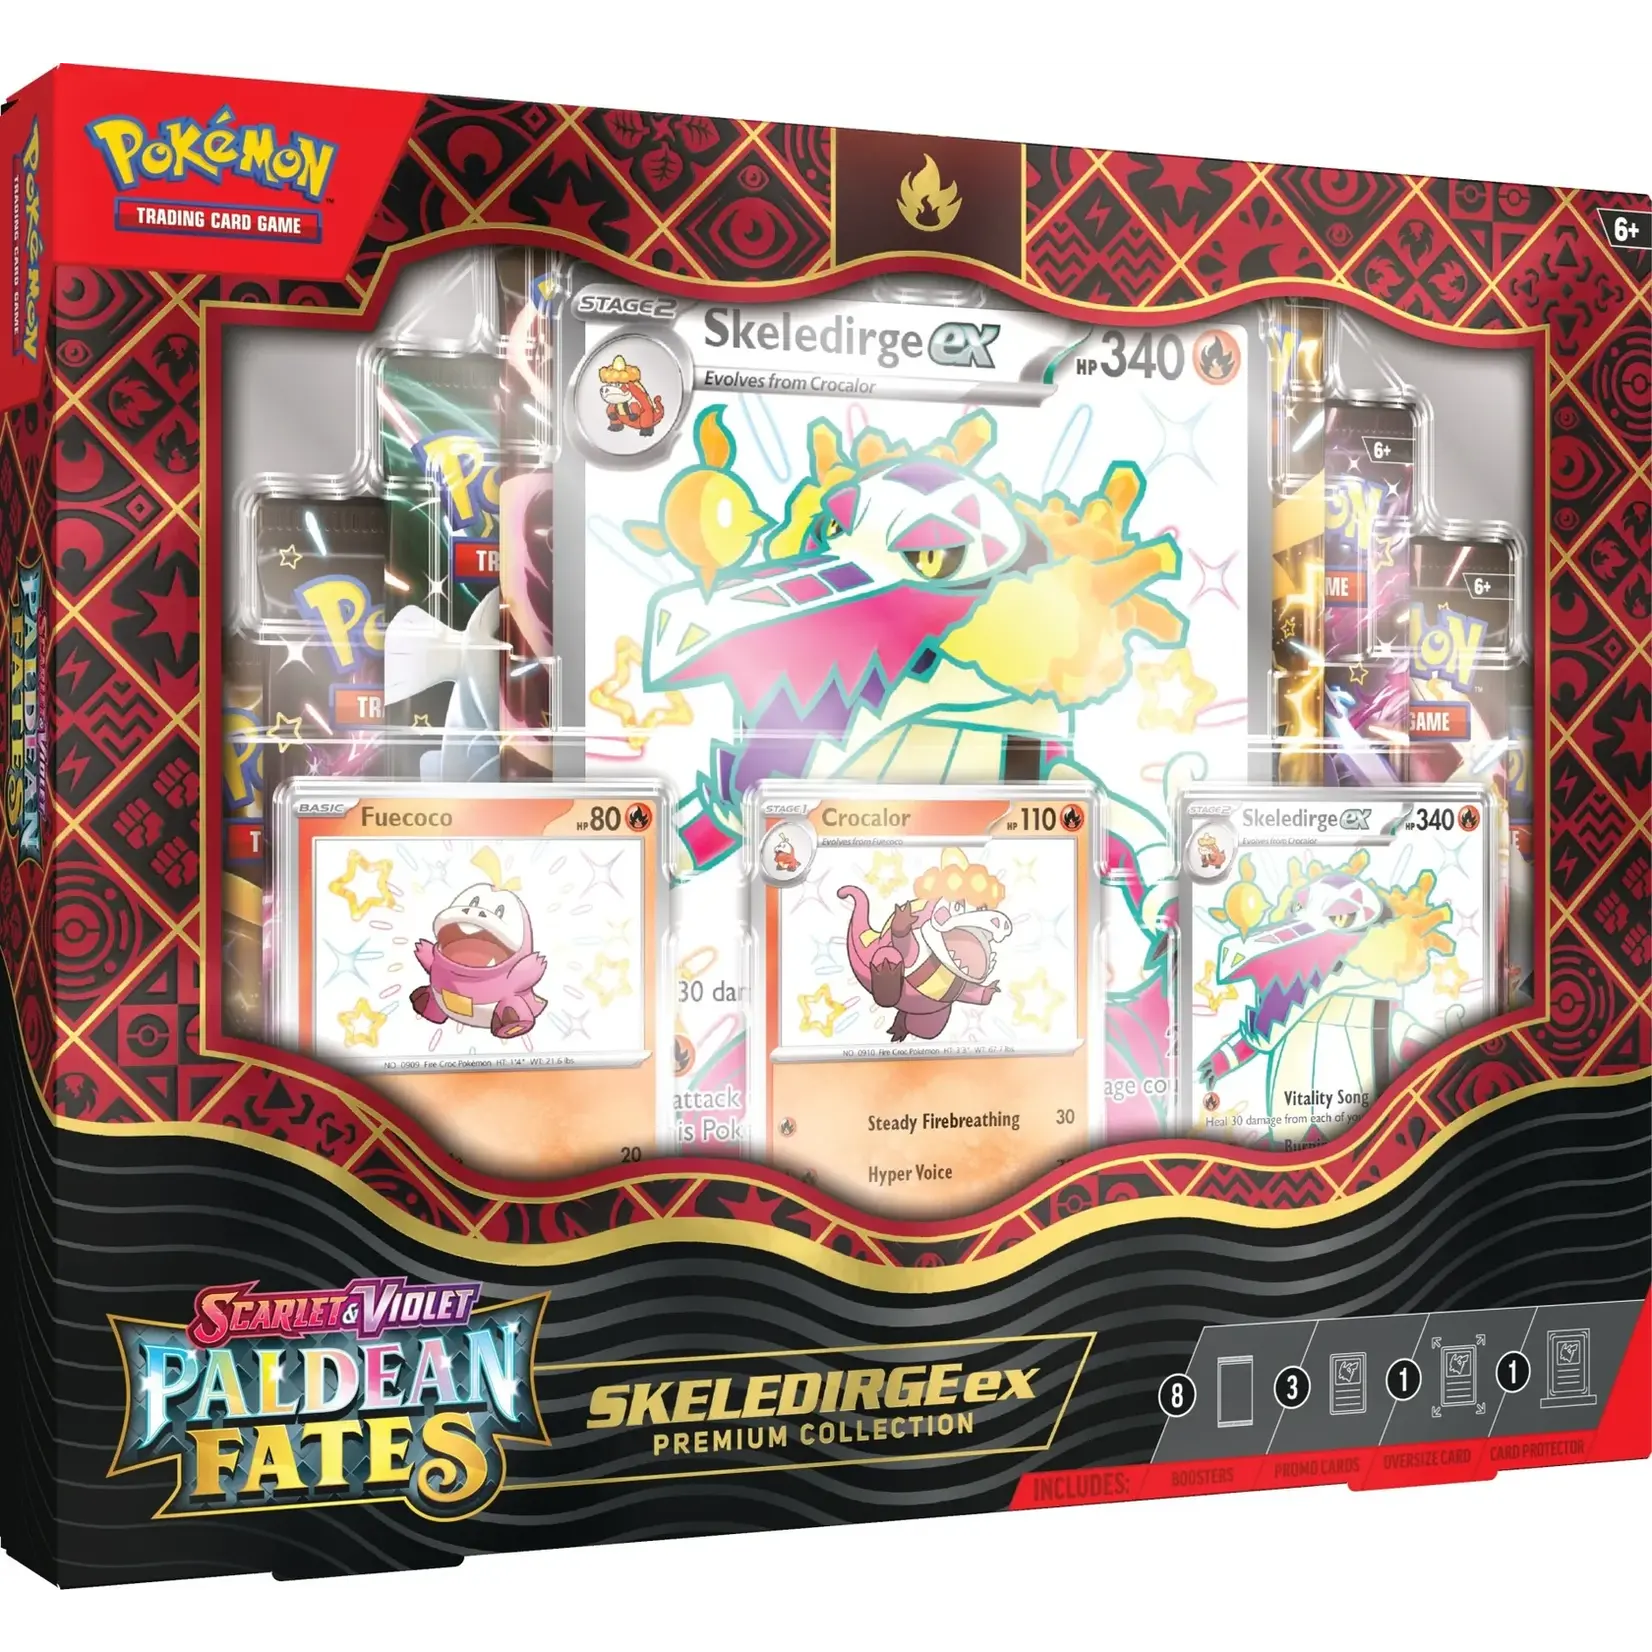 Pokémon Pokemon: Skeledirge EX - Premium Collection